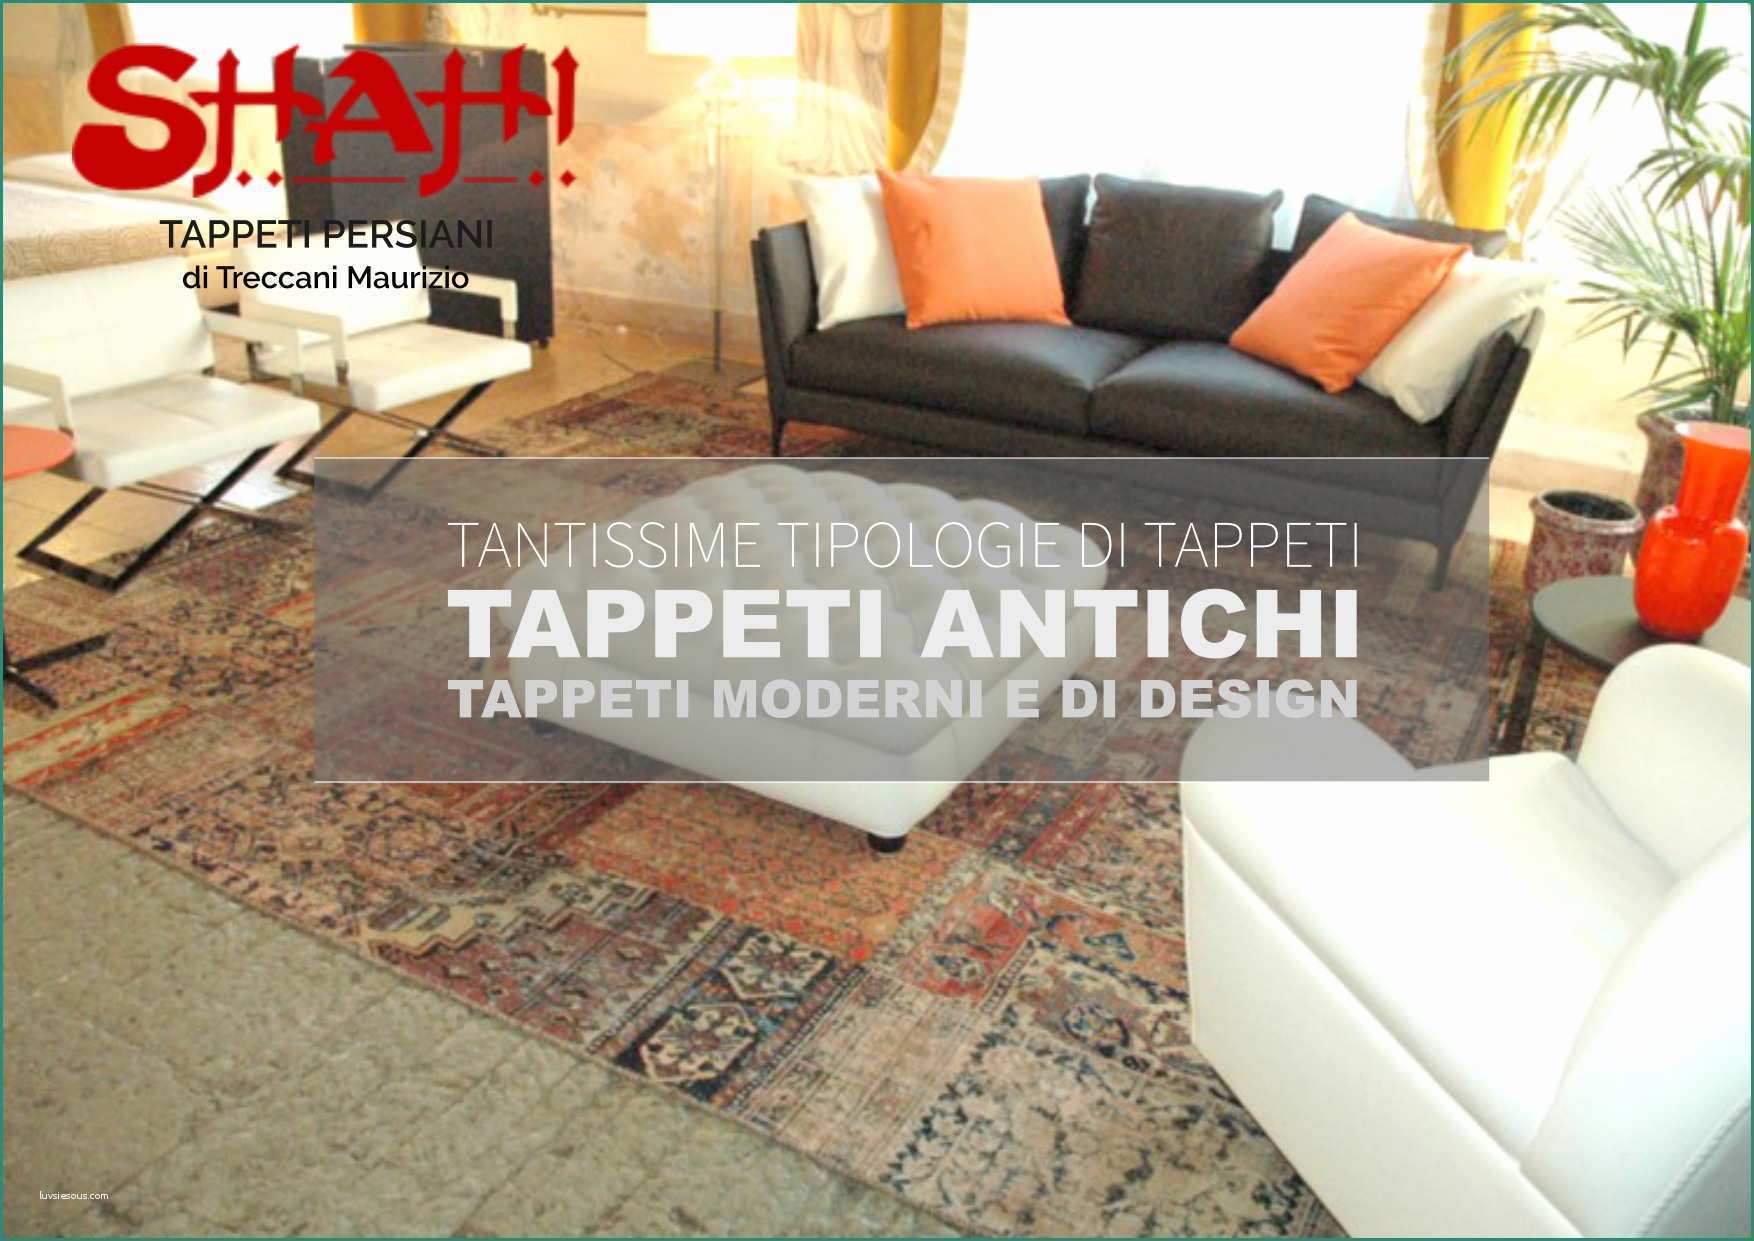 Tappeti Per Salotto E Tappeti Persiani Tipologie Cheap Articolo Aggiunto with Tappeti